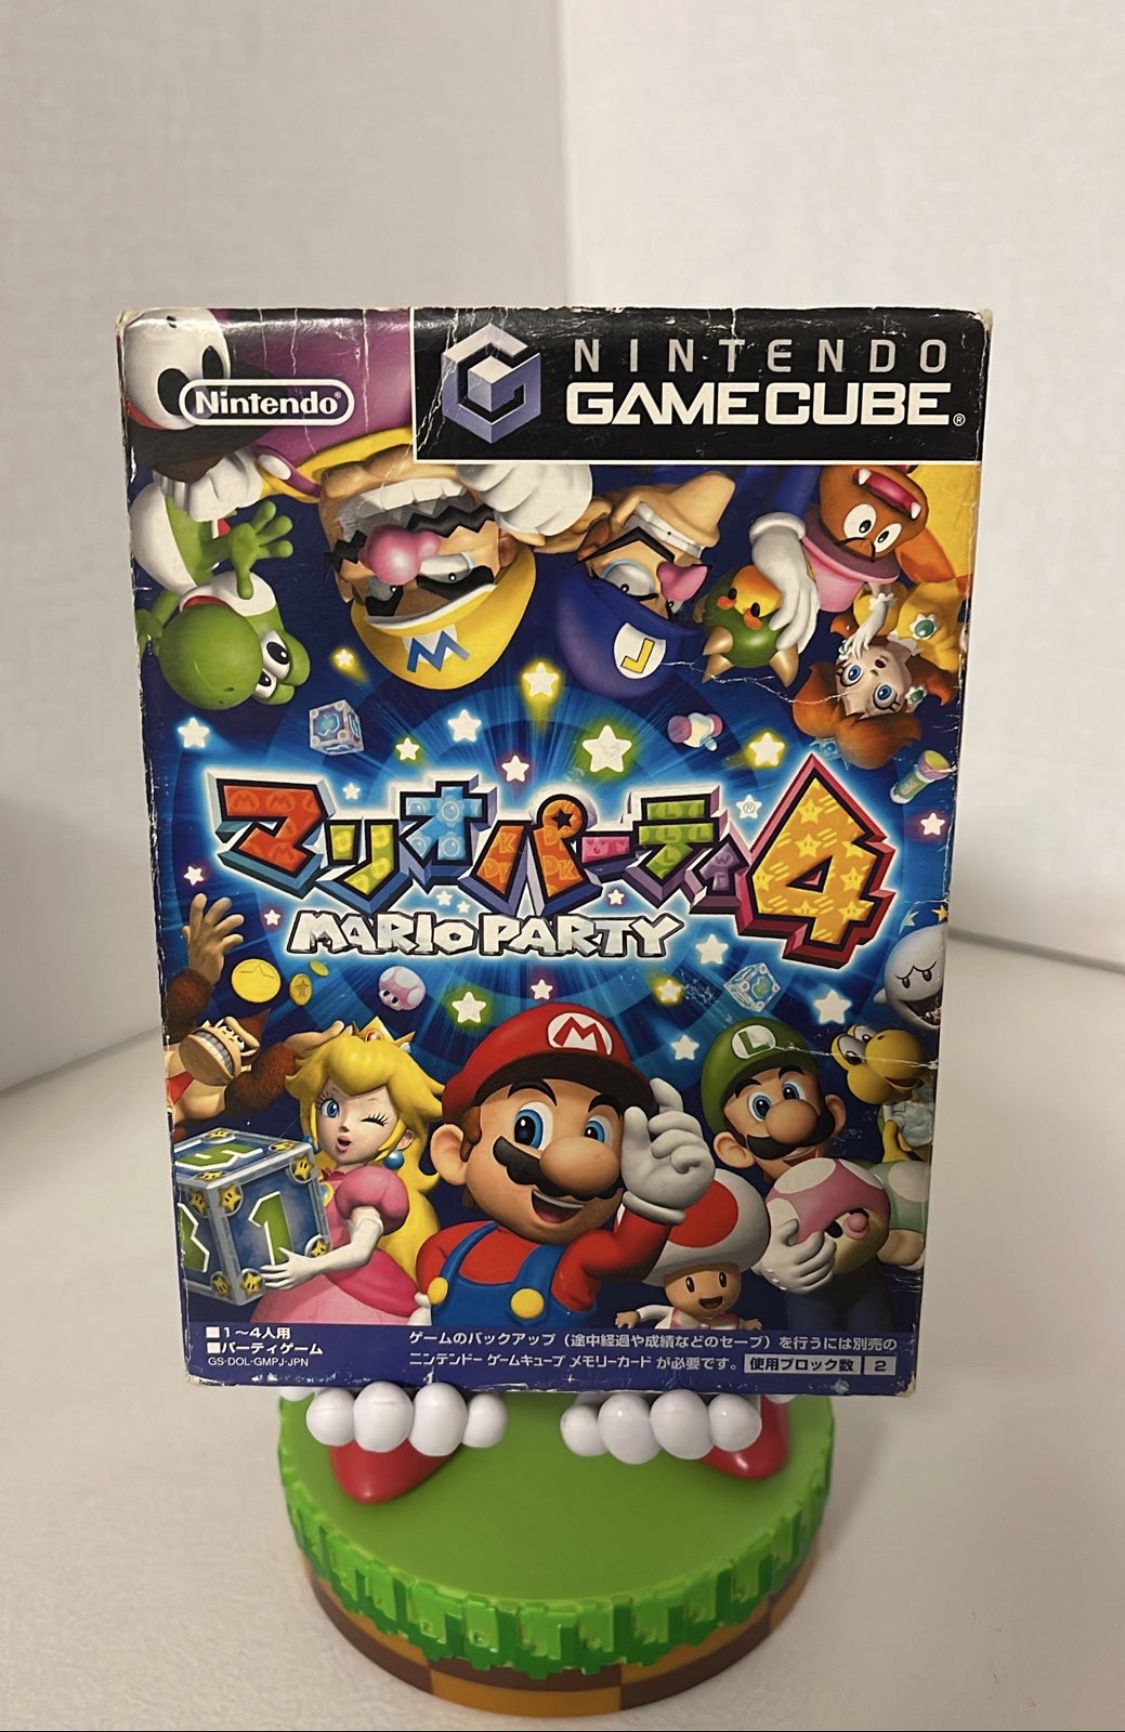 Mario Party 4 for Nintendo GameCube